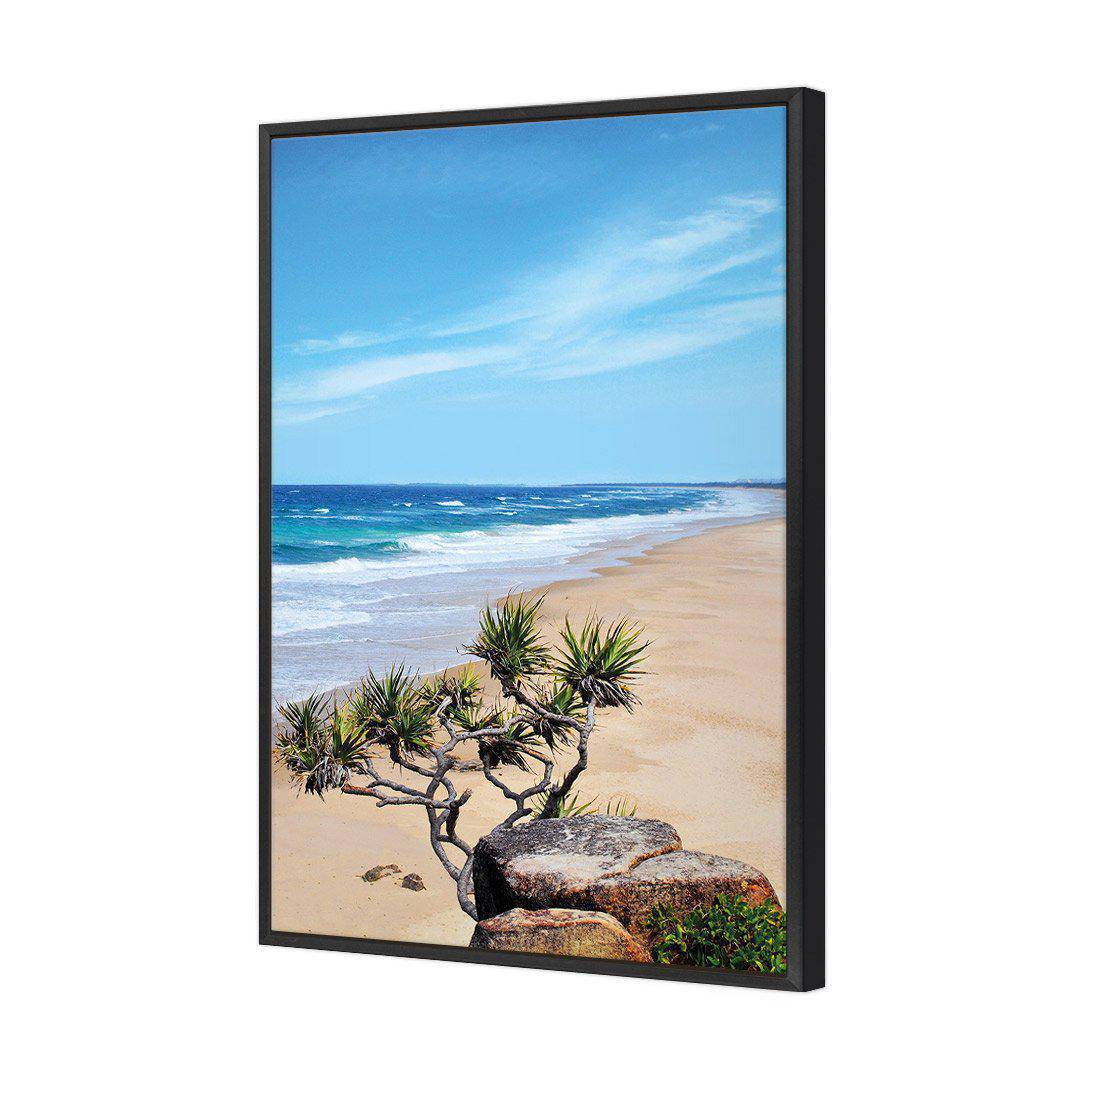 Coolum Beach Canvas Art-Canvas-Wall Art Designs-45x30cm-Canvas - Black Frame-Wall Art Designs